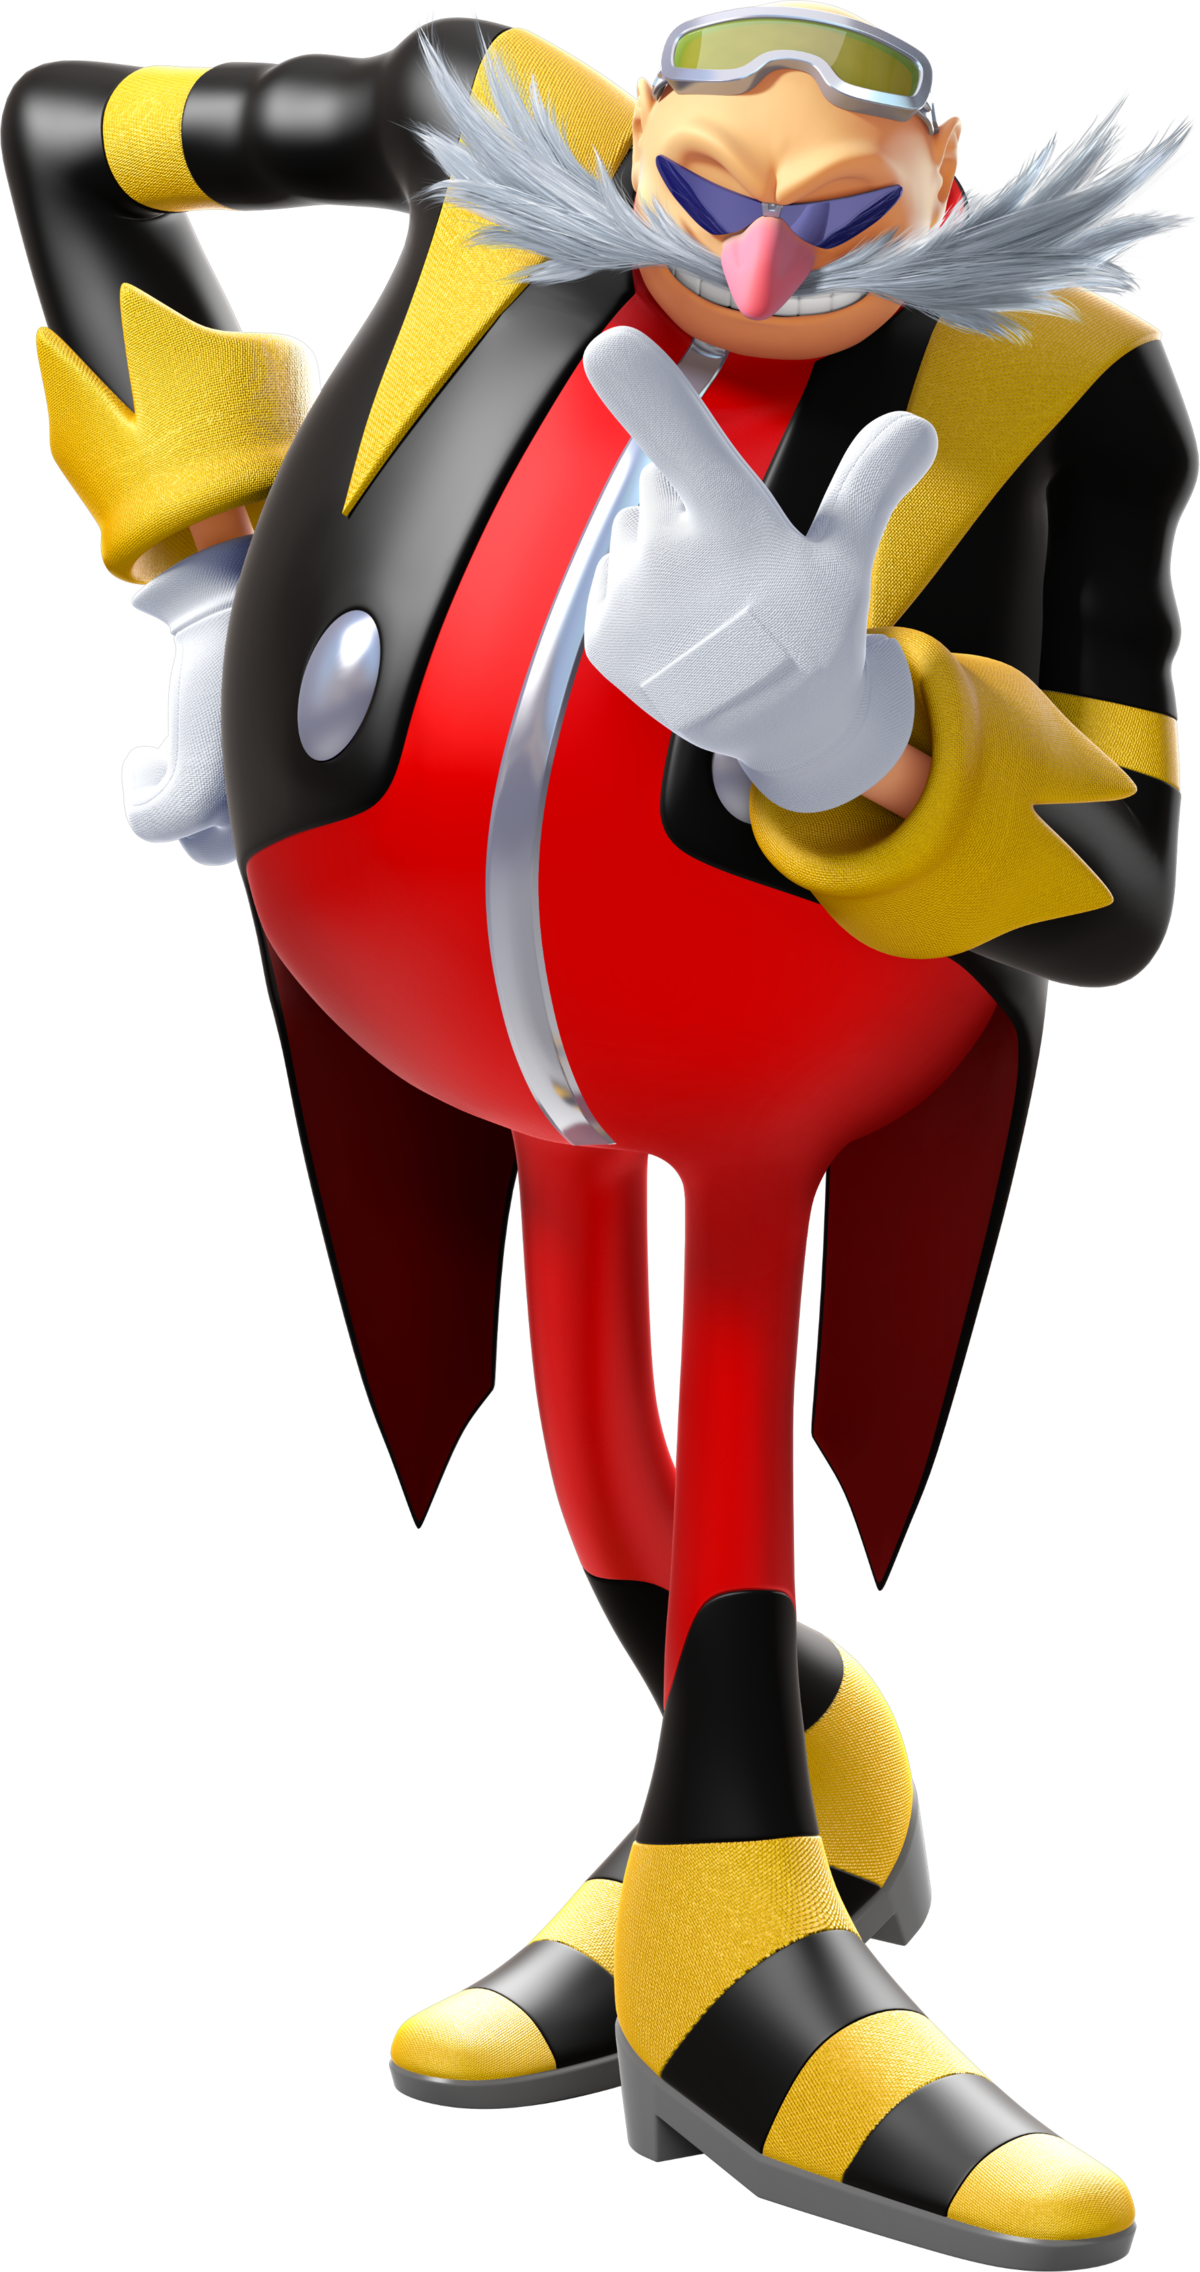 Sonic - Super Mario Wiki, the Mario encyclopedia